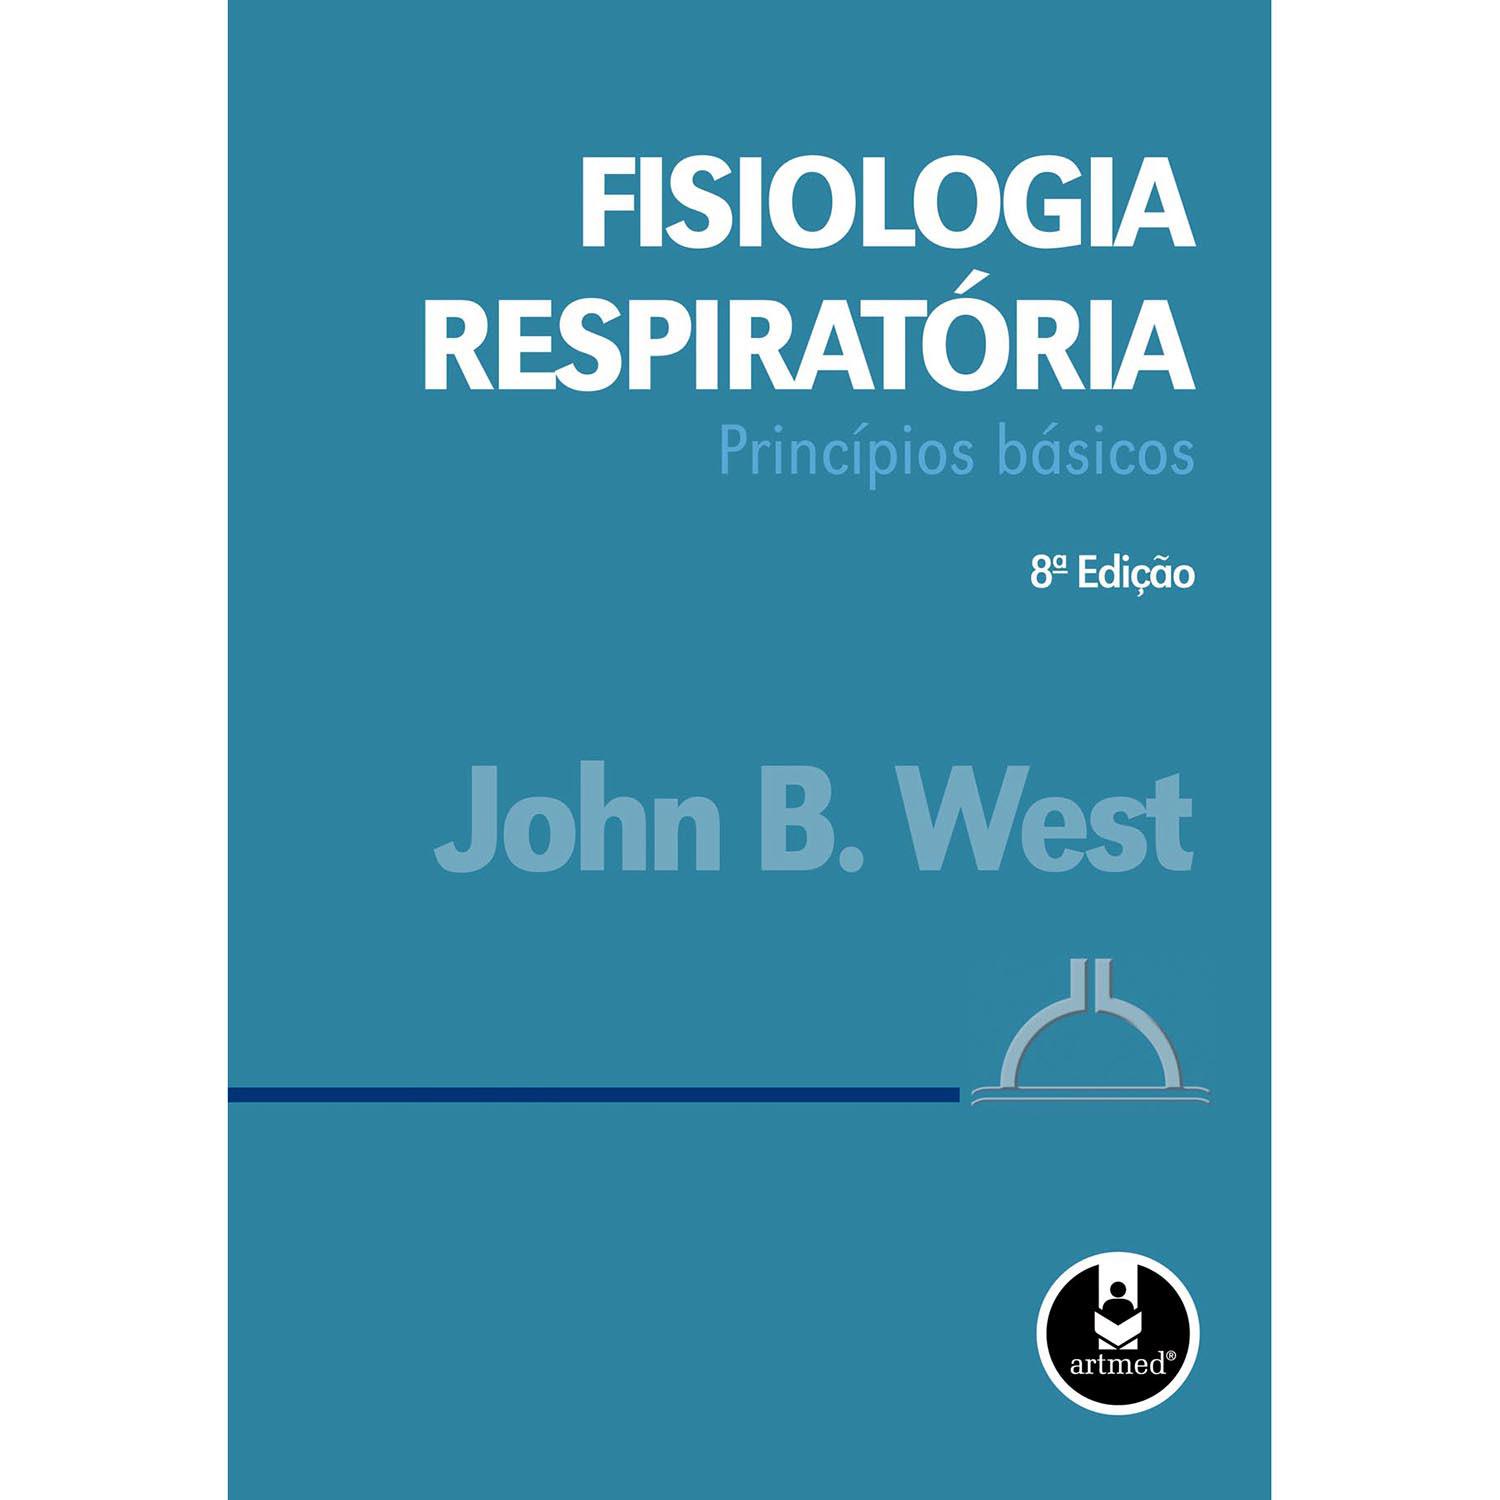 Livro - Fisiologia Respiratória: Princípios Básicos é bom? Vale a pena?